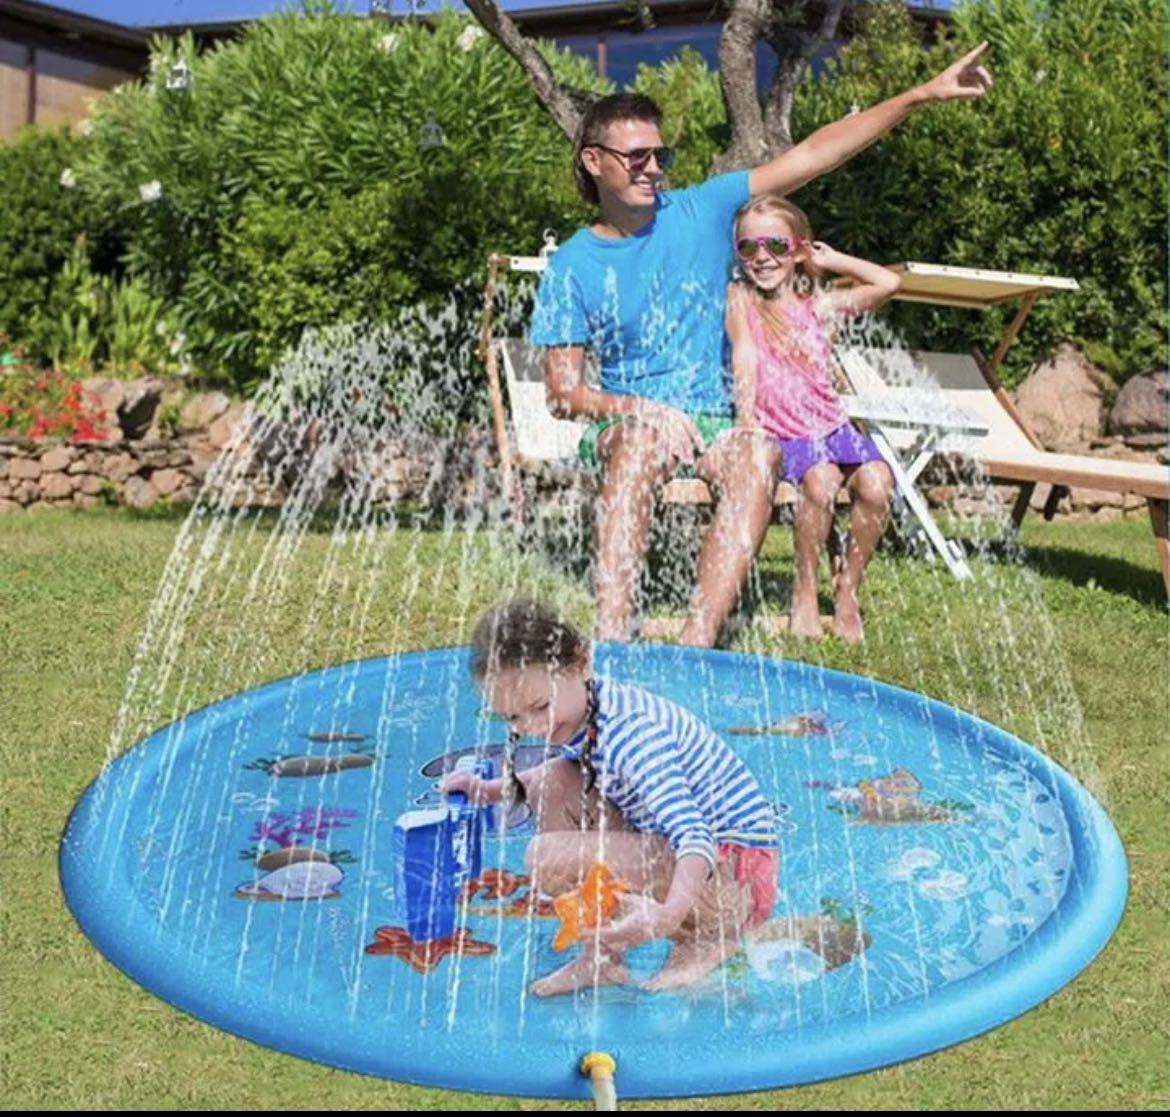 「夏対策*子供の日」噴水マット プレイマット 噴水おもちゃ キッズ 水遊び 親子遊び プールマット アウトドア噴水池 庭の中に遊び 家族用_画像4